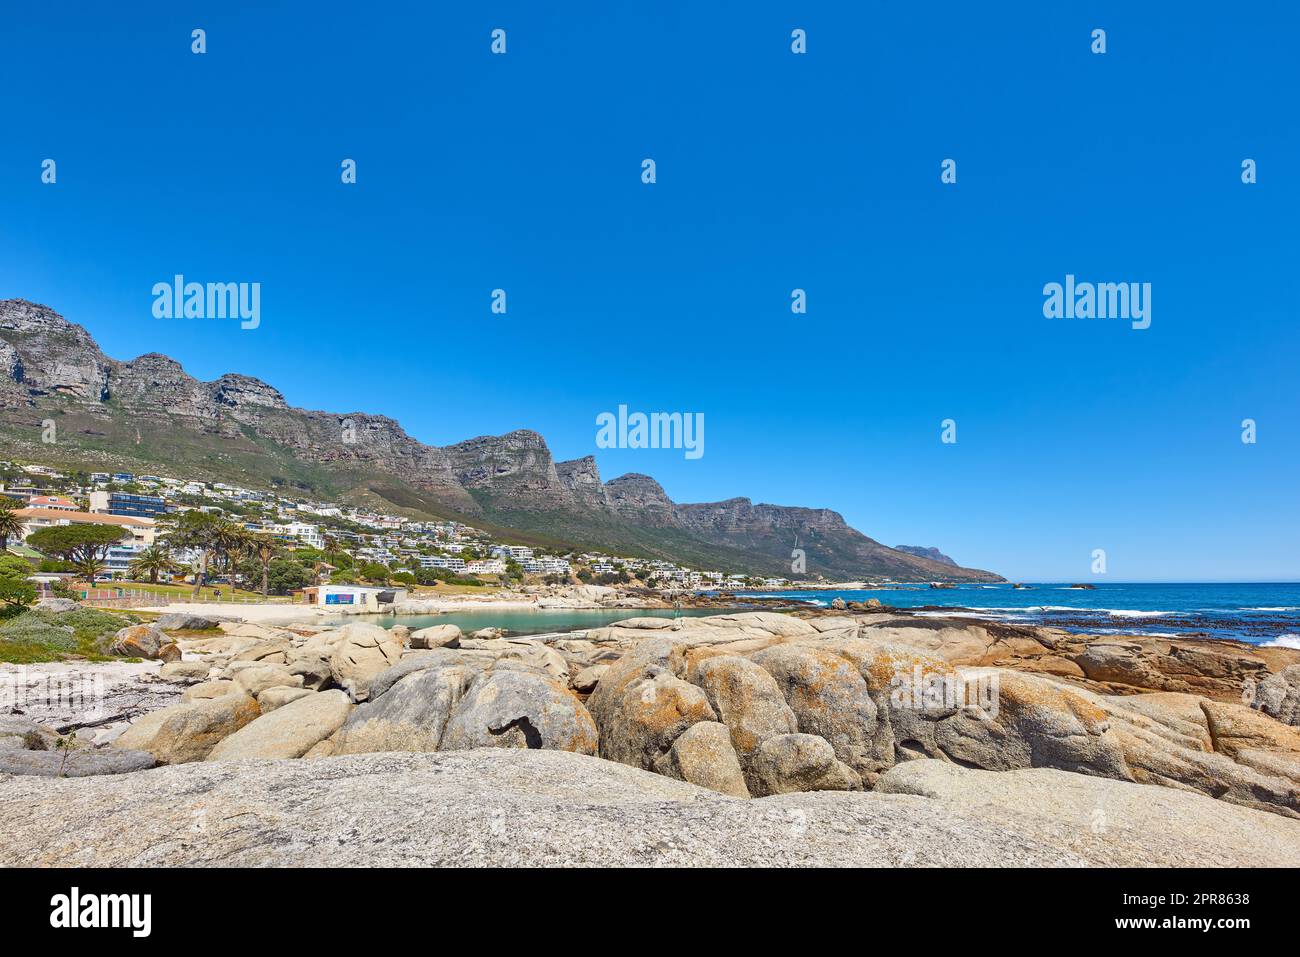 Landschaft eines Sommerurlaubsziels mit einer einzigartigen Bergkette in der Nähe eines felsigen Strandes in Südafrika. Blick auf die zwölf Apostel in Kapstadt und ein ruhiges Meer vor einem hellblauen Horizont. Stockfoto